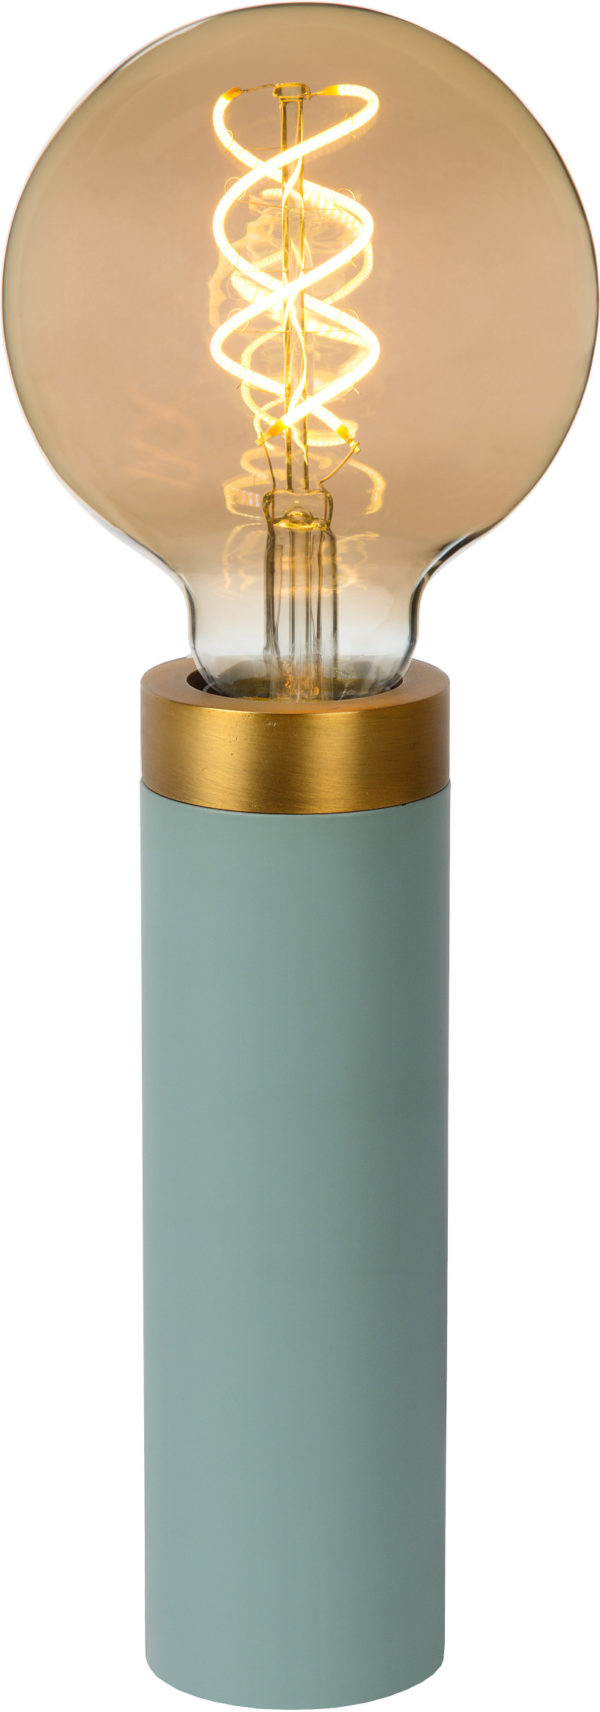 Selin tafellamp Ã¸ 6 cm 1xe27 - koper Lucide Tafellamp 03522/01/37